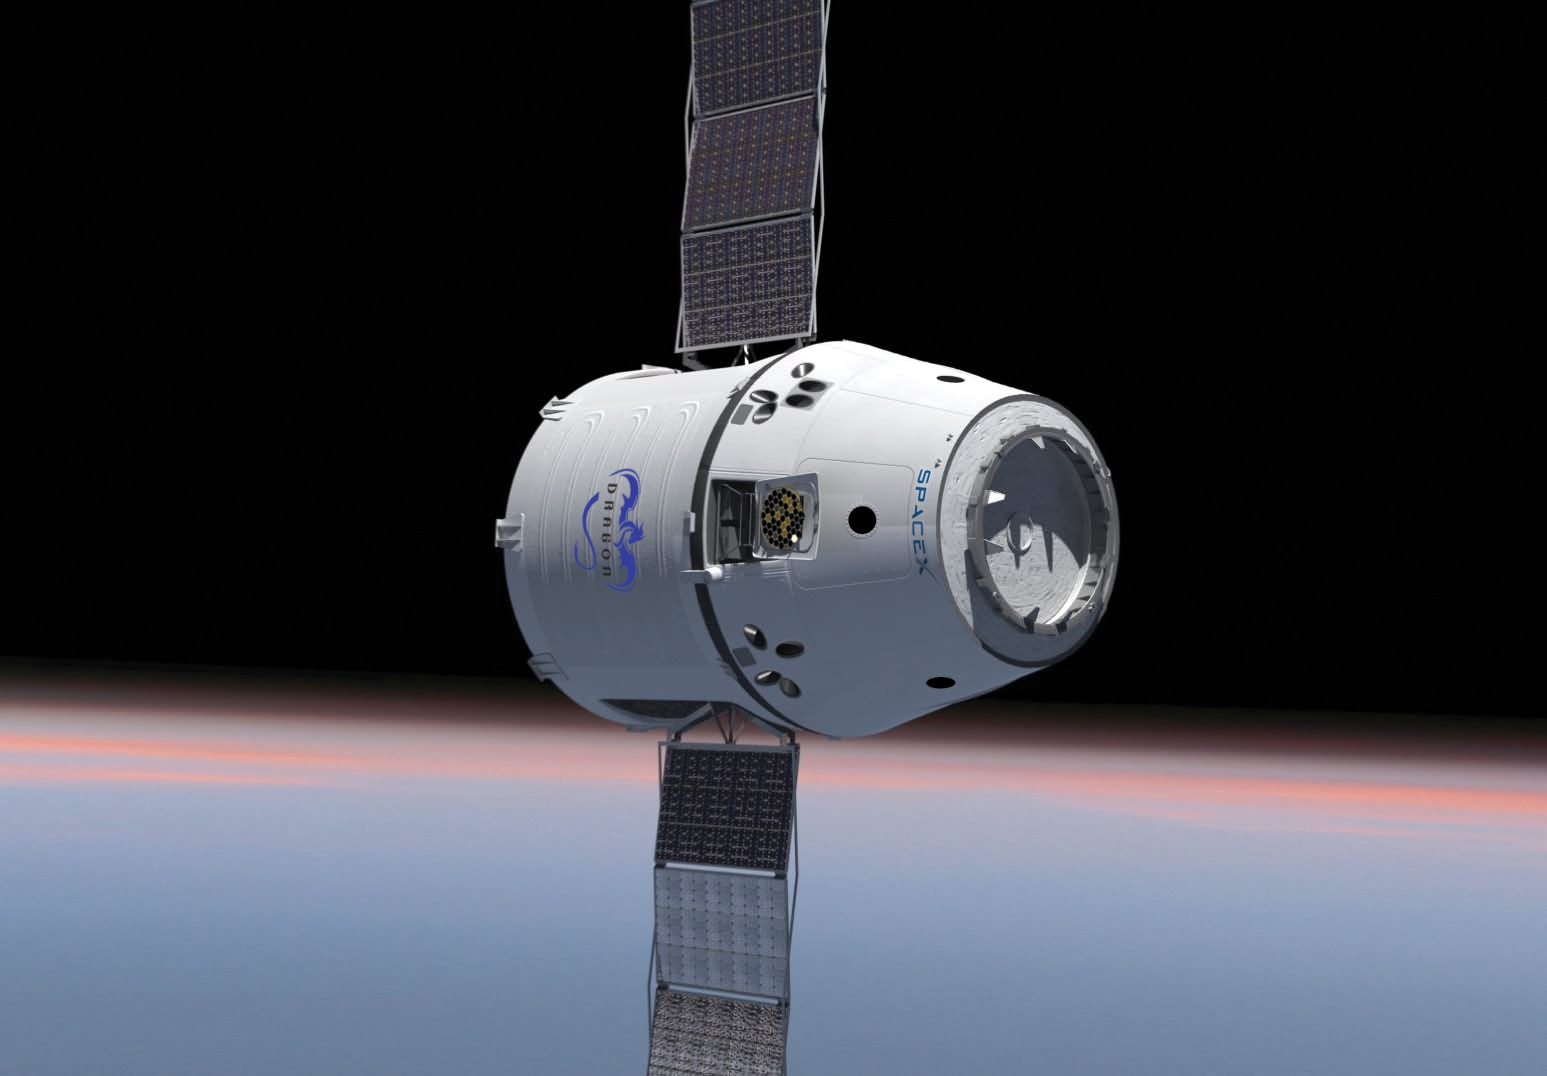 Hamarosan indul a Dragon. ez lesz az első magánűrhajó a nemzetközi űrállomáson <br>(grafika, fotó: SpaceX)